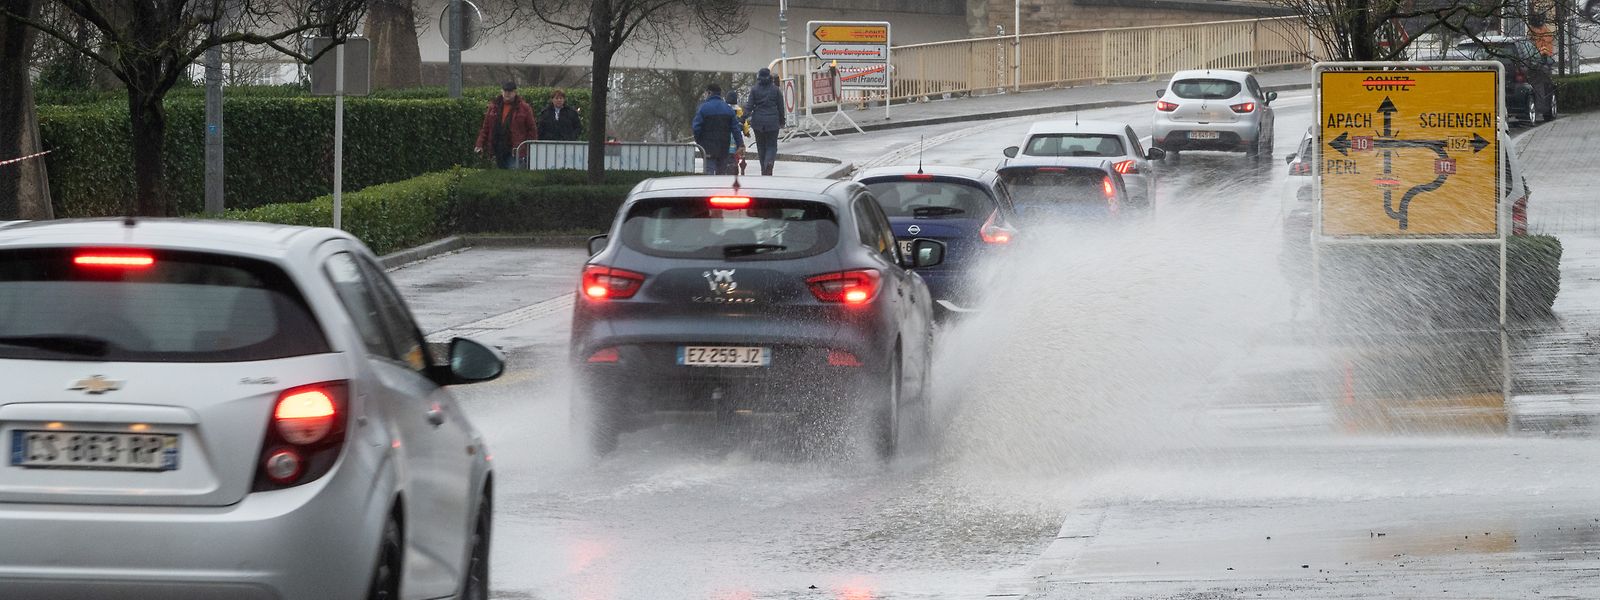 Le danger à conduire un véhicule thermique ou électrique en cas d'inondation est le même, et ne tient pas à la motorisation assure Claude Turmes.